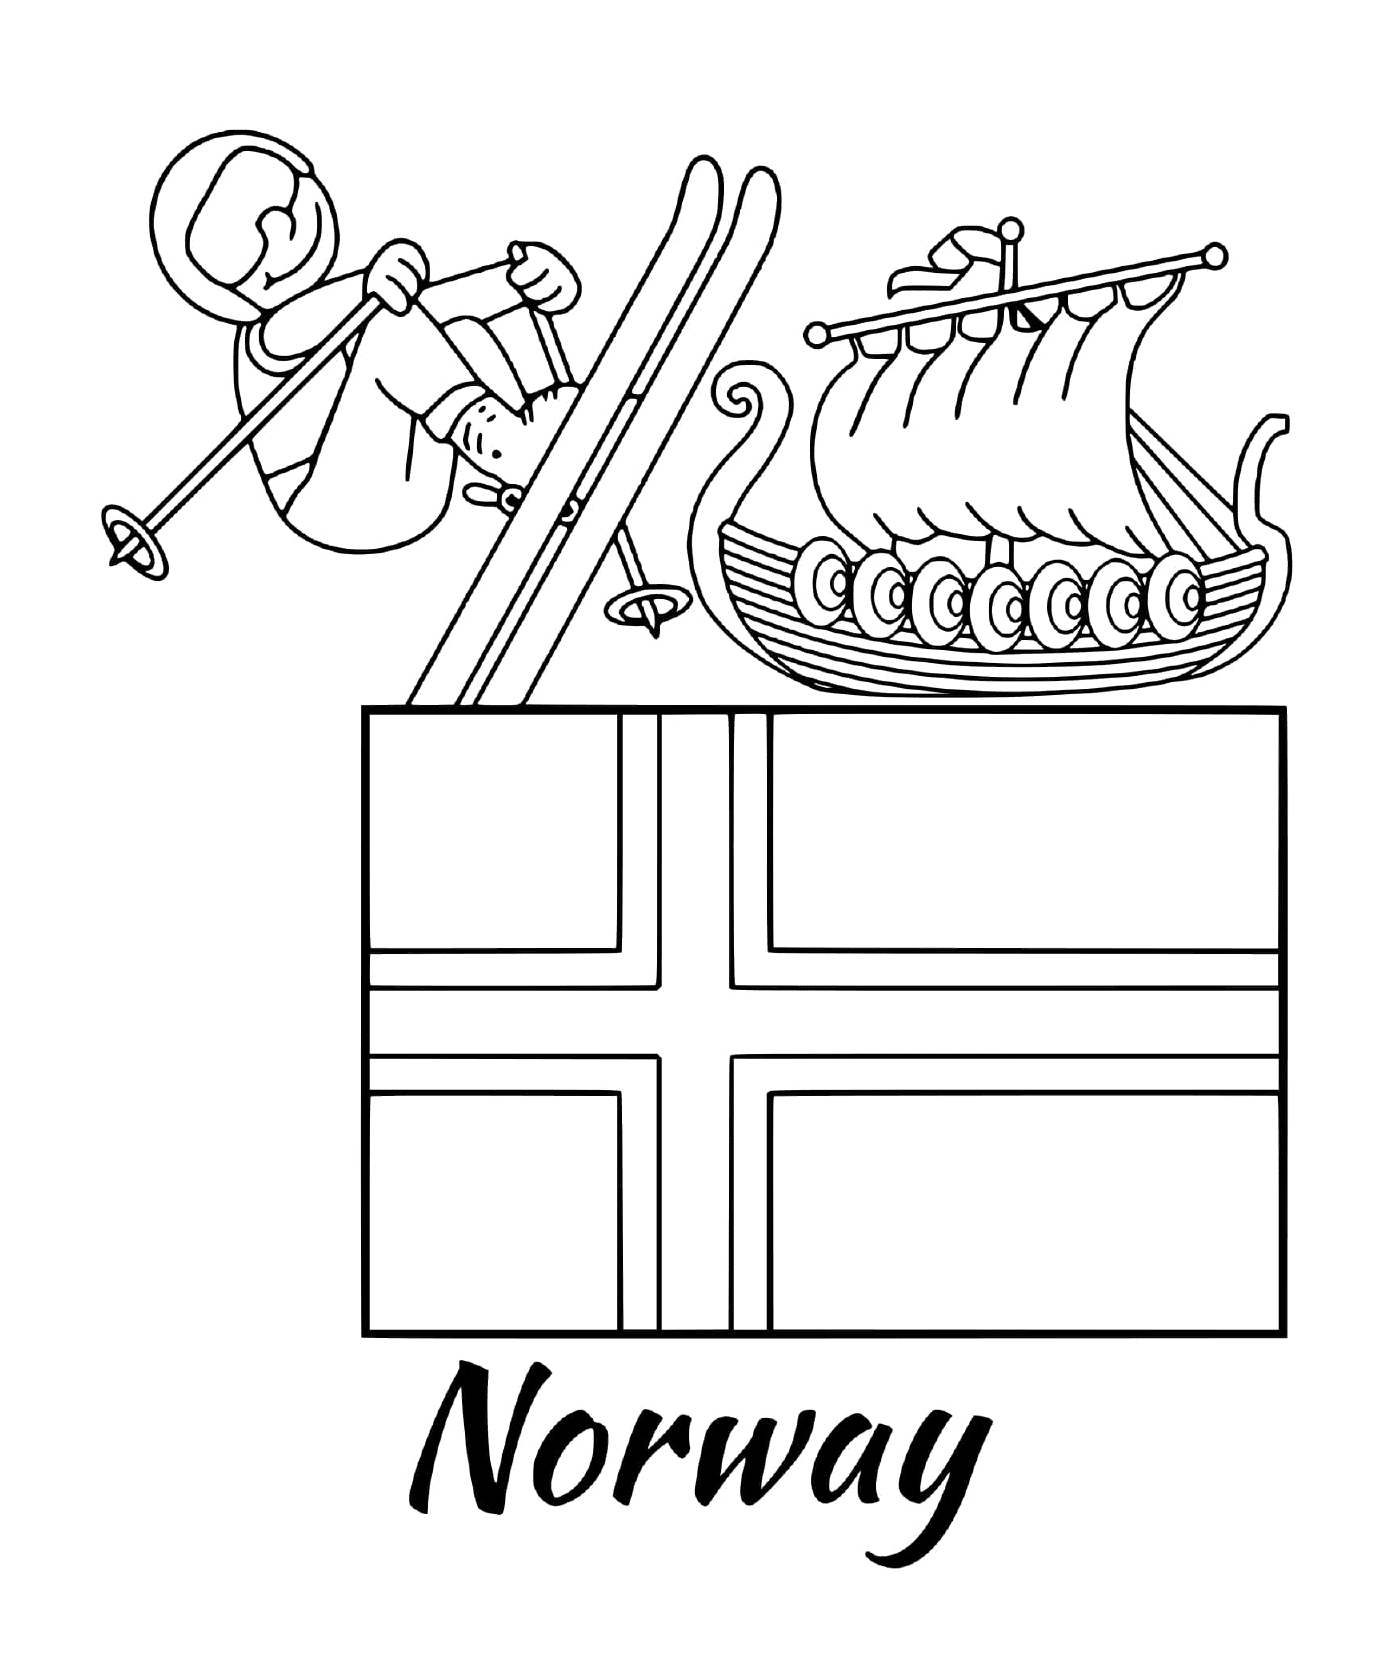  Bandera de Noruega, esquí 